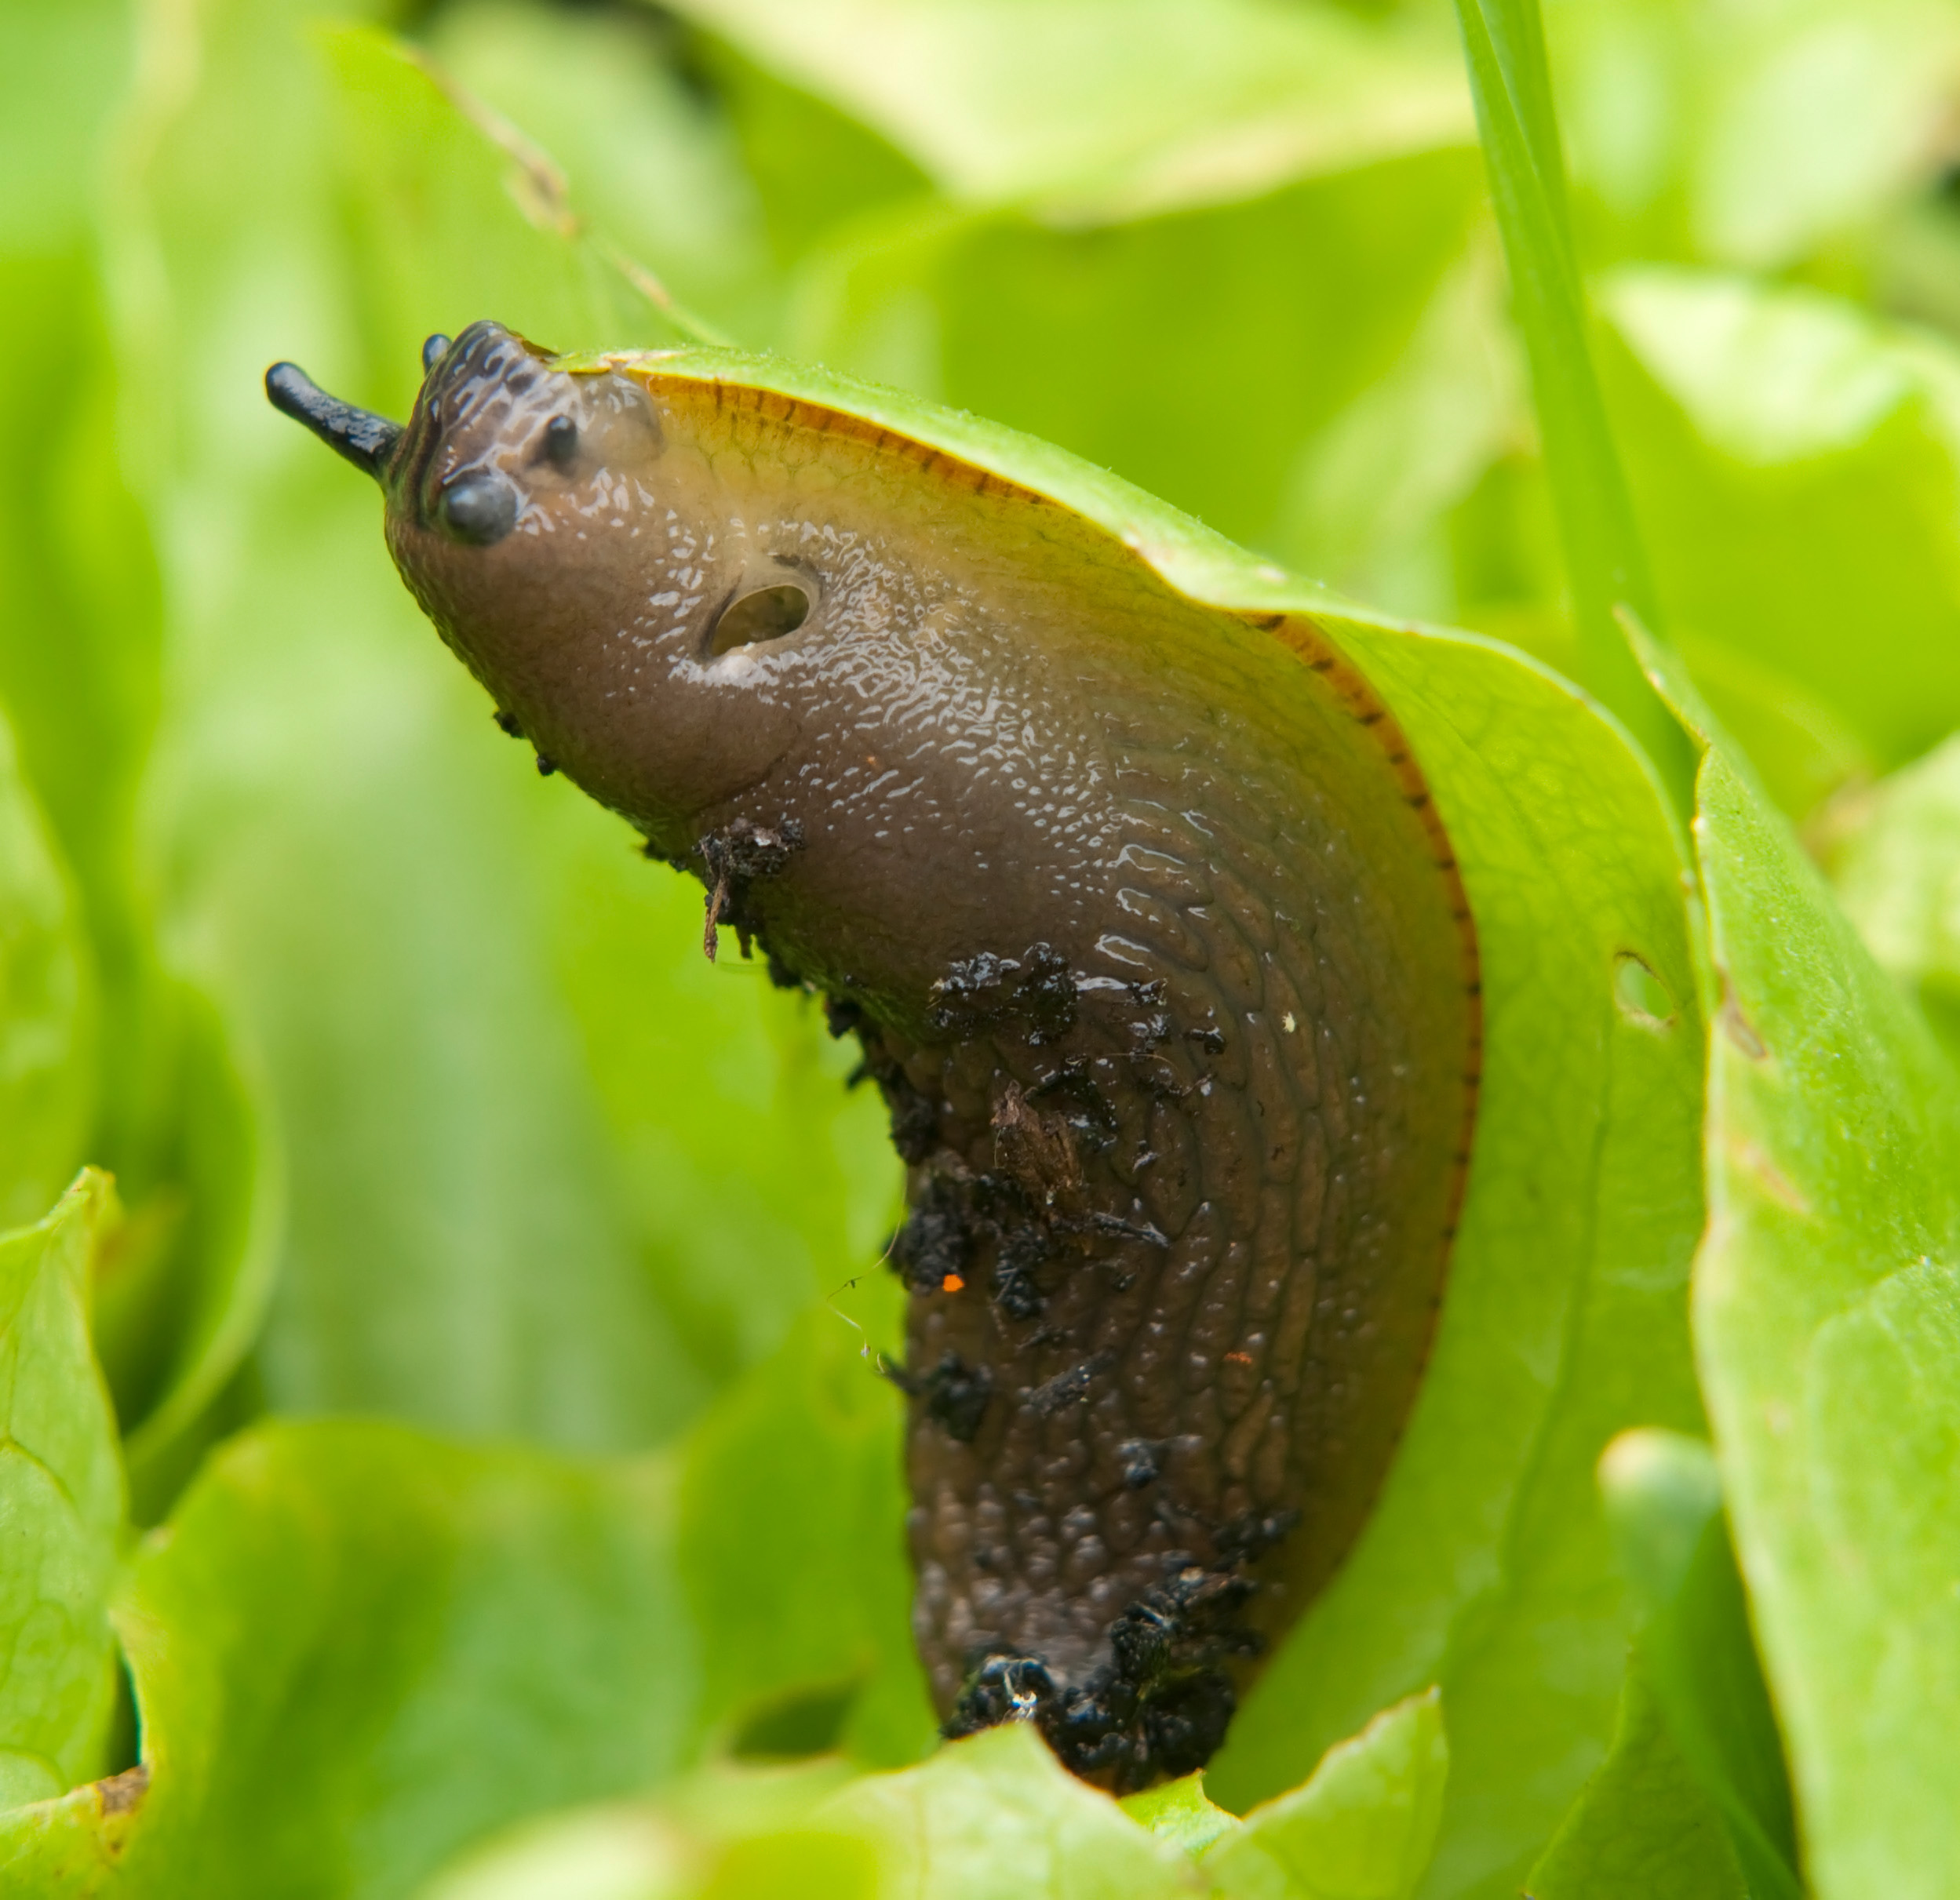 Pick off slugs by hand (Thinkstock/PA)